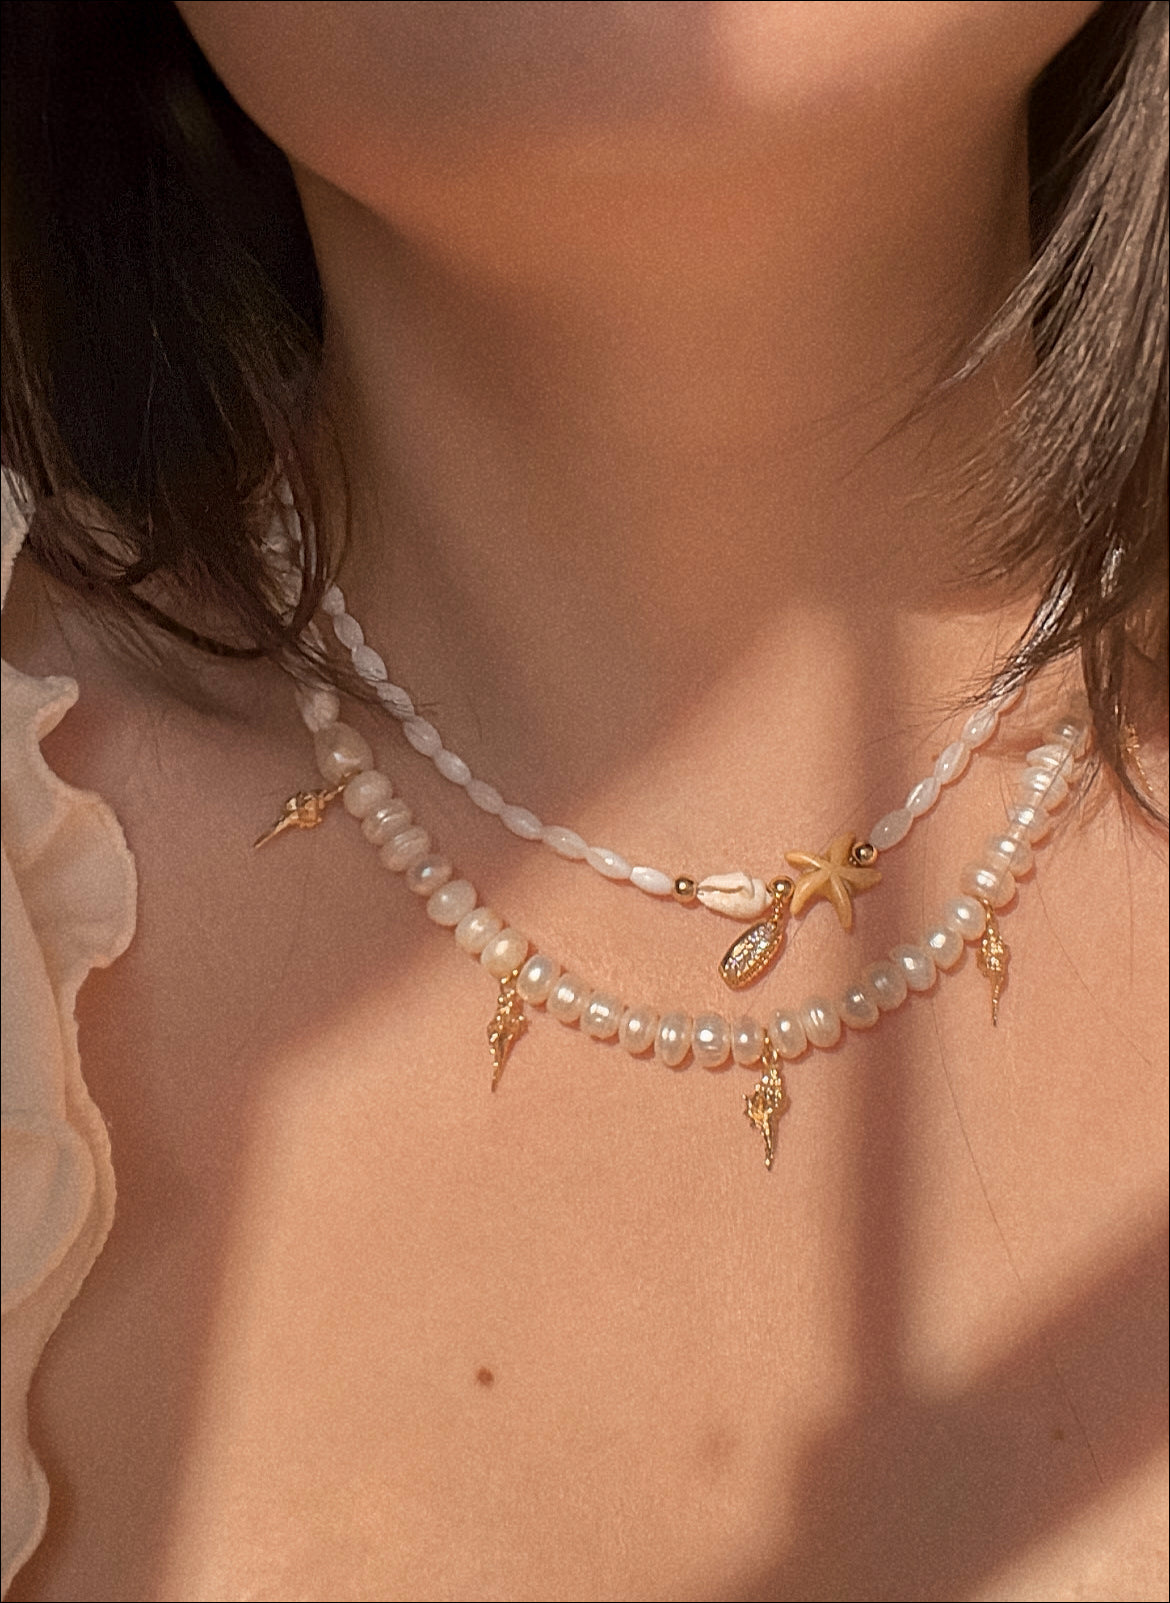 Caracoles y estrellas necklaces